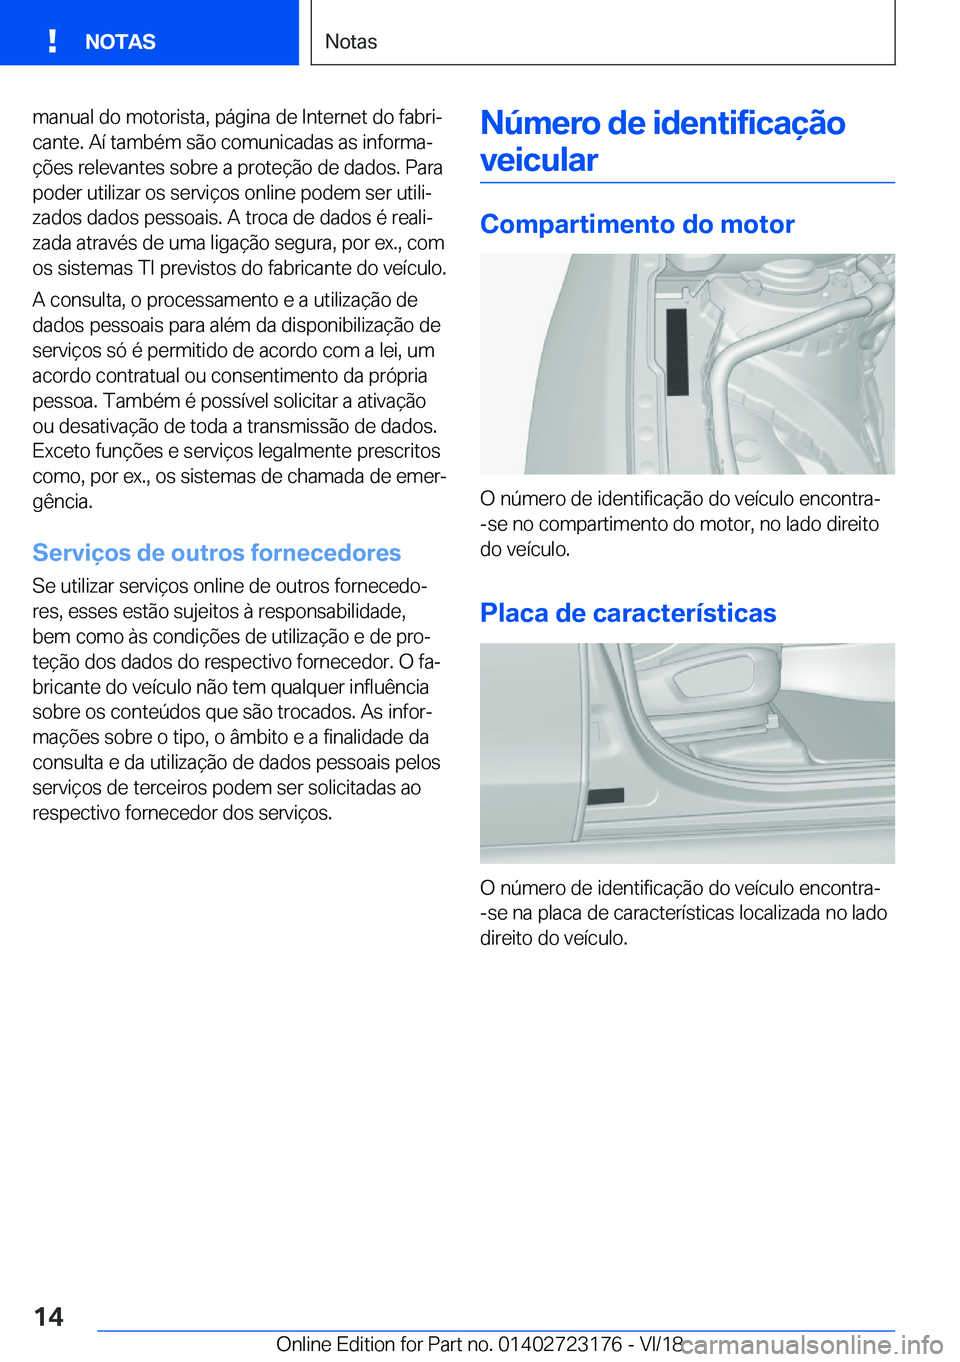 BMW 4 SERIES GRAN COUPE 2019  Manual do condutor (in Portuguese) �m�a�n�u�a�l��d�o��m�o�t�o�r�i�s�t�a�,��p�á�g�i�n�a��d�e��I�n�t�e�r�n�e�t��d�o��f�a�b�r�iª�c�a�n�t�e�.��A�